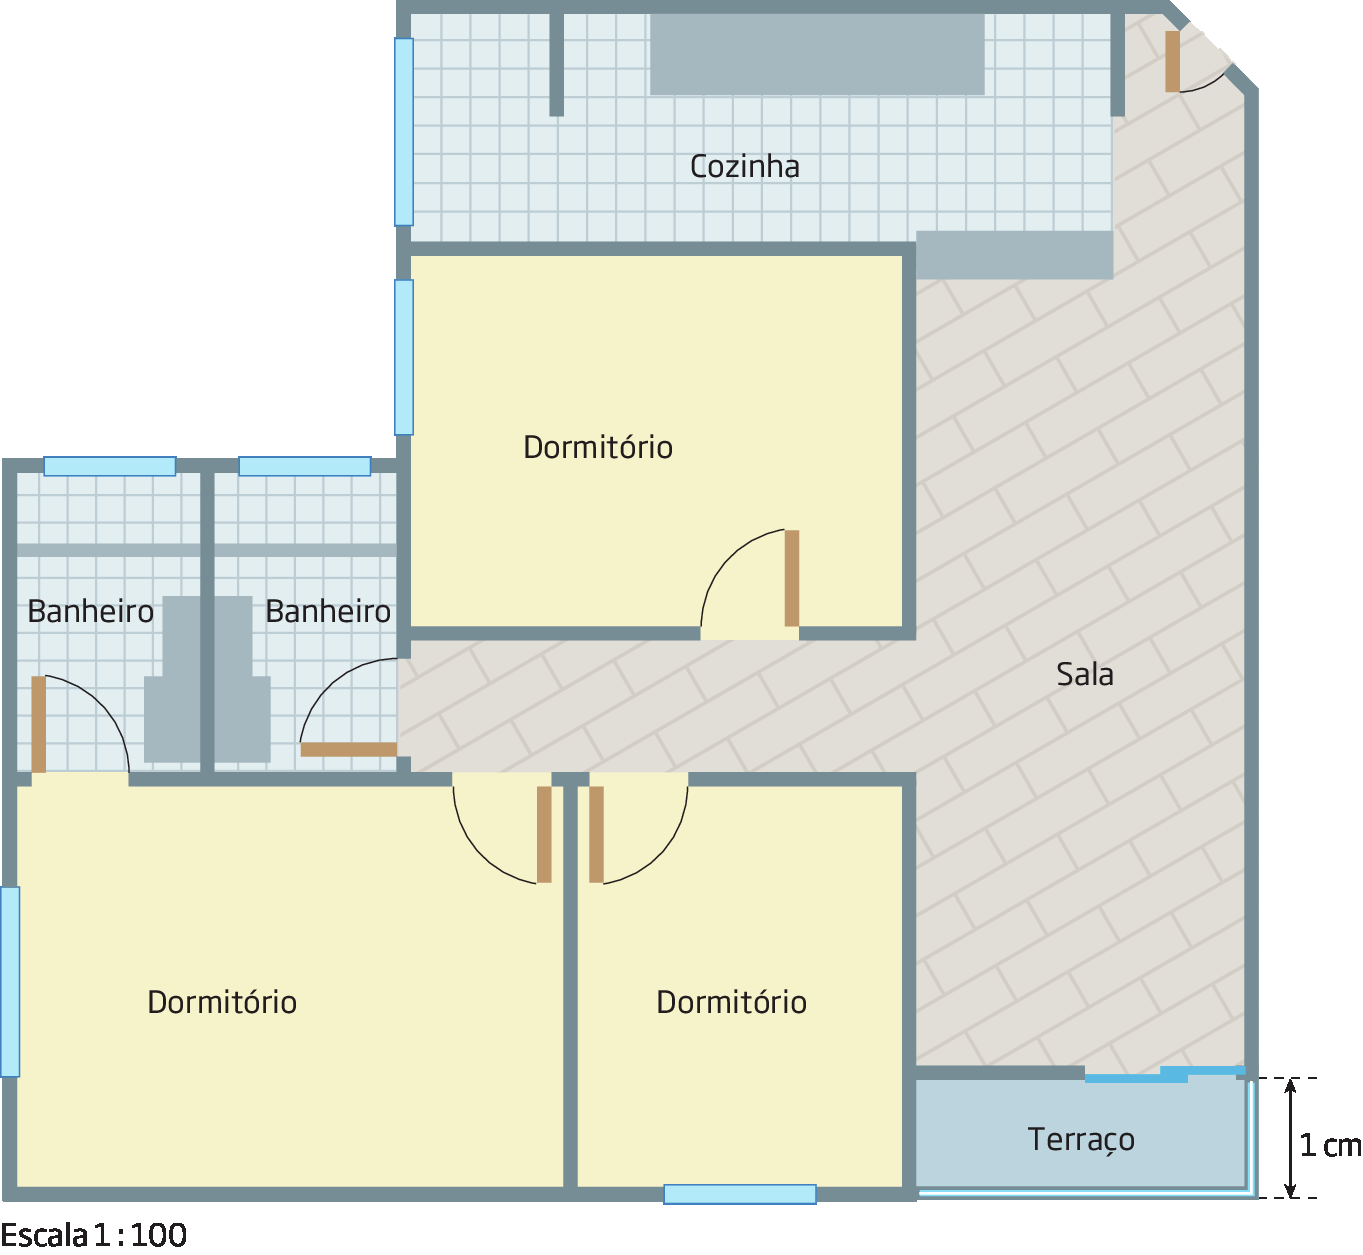 Ilustração. Planta de um apartamento dividido em cozinha, 3 dormitórios, sala, dois banheiros e terraço. Tem indicações das posições de portas e janelas. No canto inferior esquerdo há uma cota indicando a medida da largura do terraço como 1 centímetro. Abaixo Escala 1 para 100.